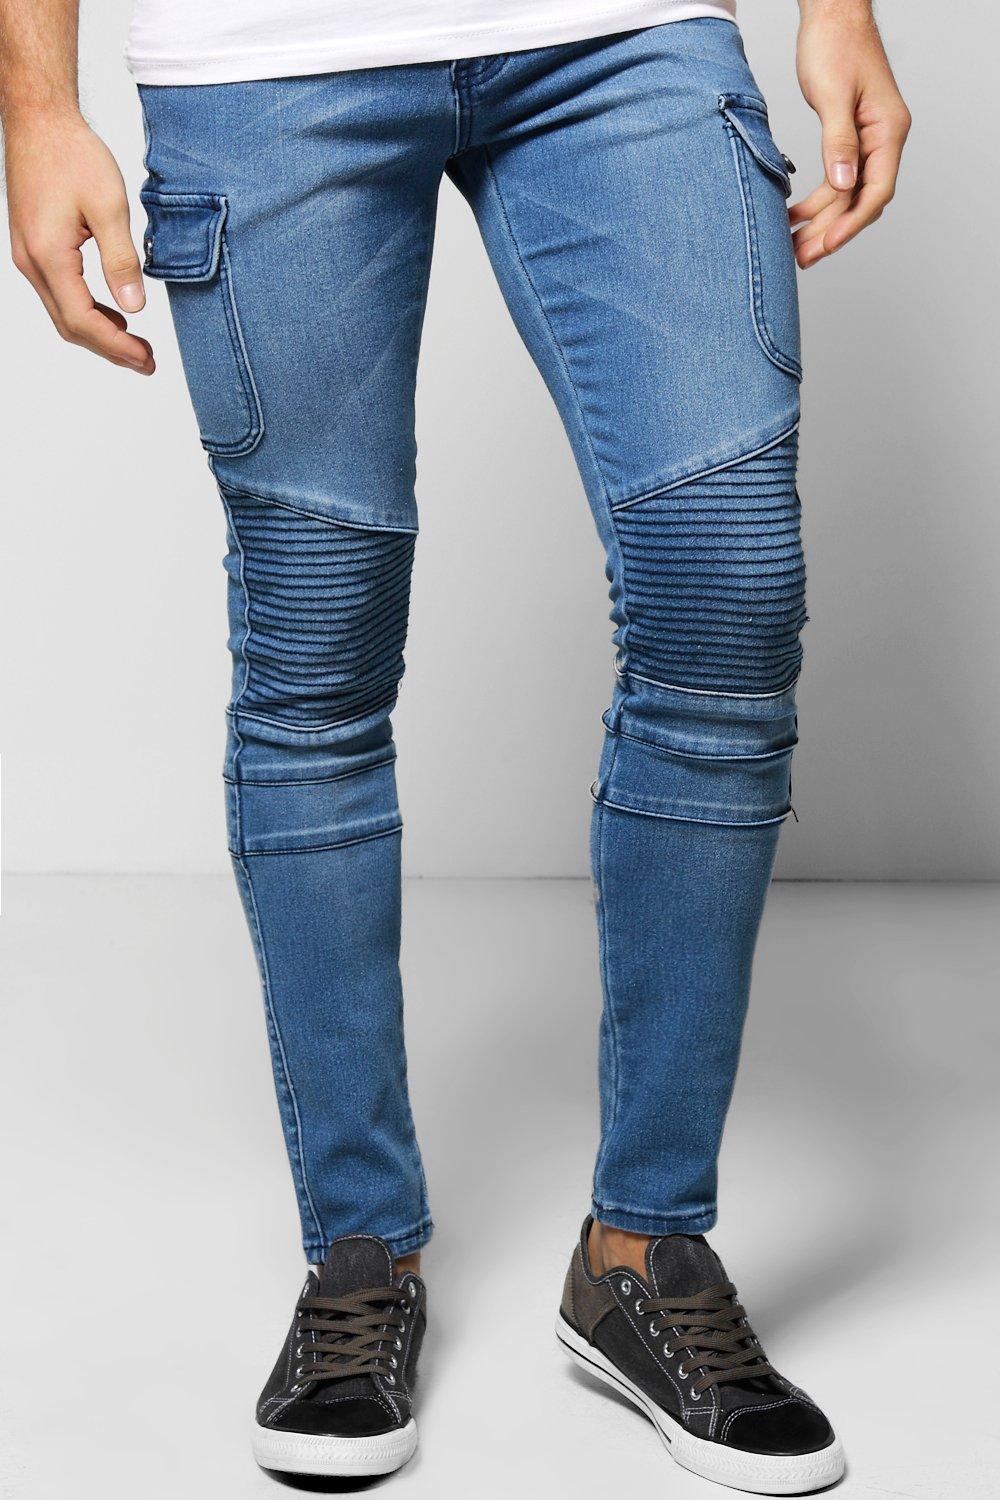 jeans stretch skinny